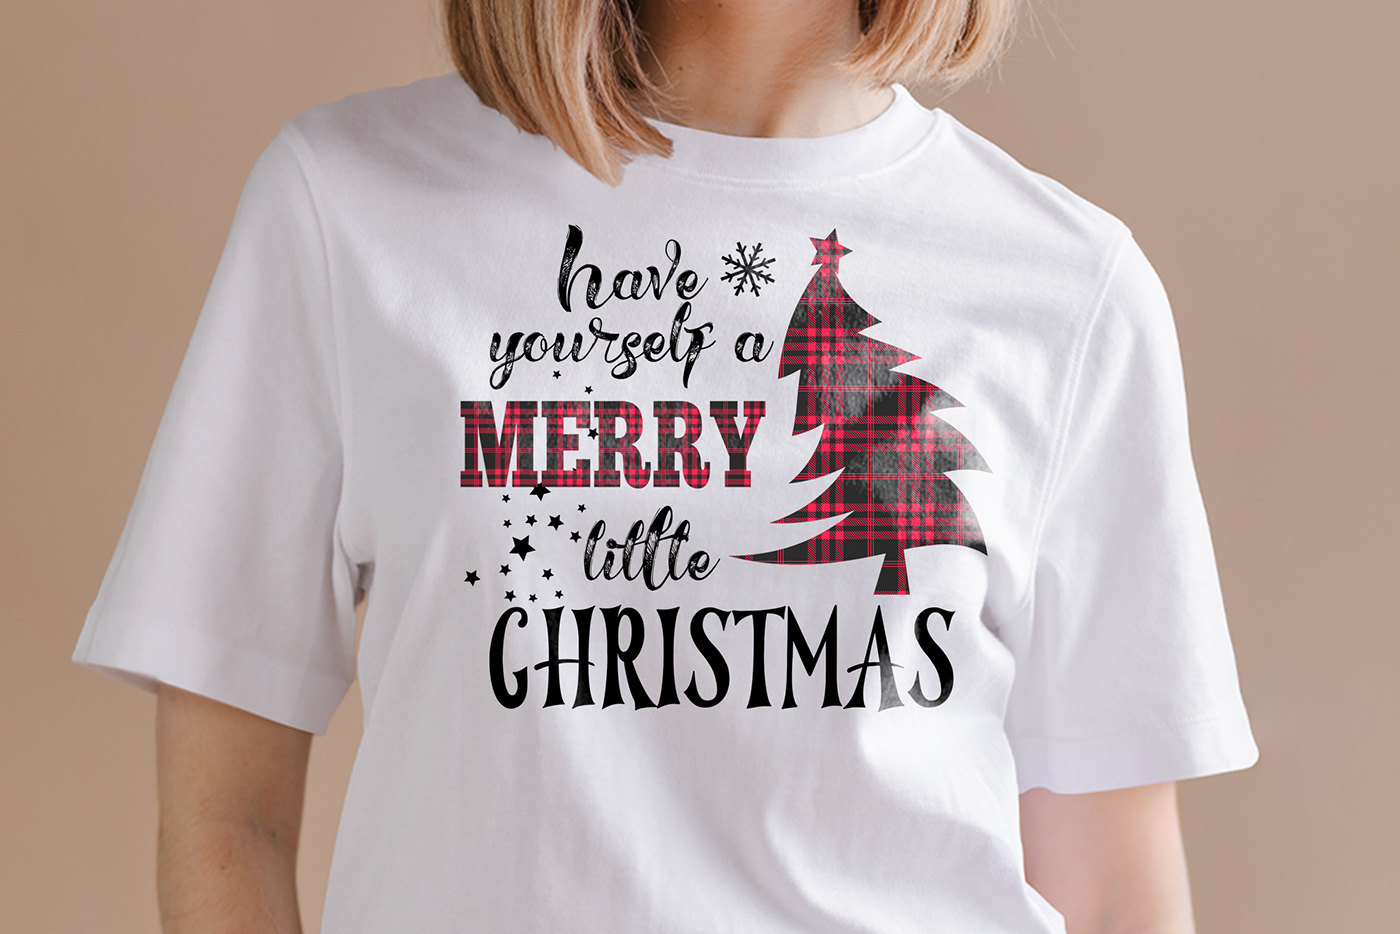 Best Christmas t shirt design